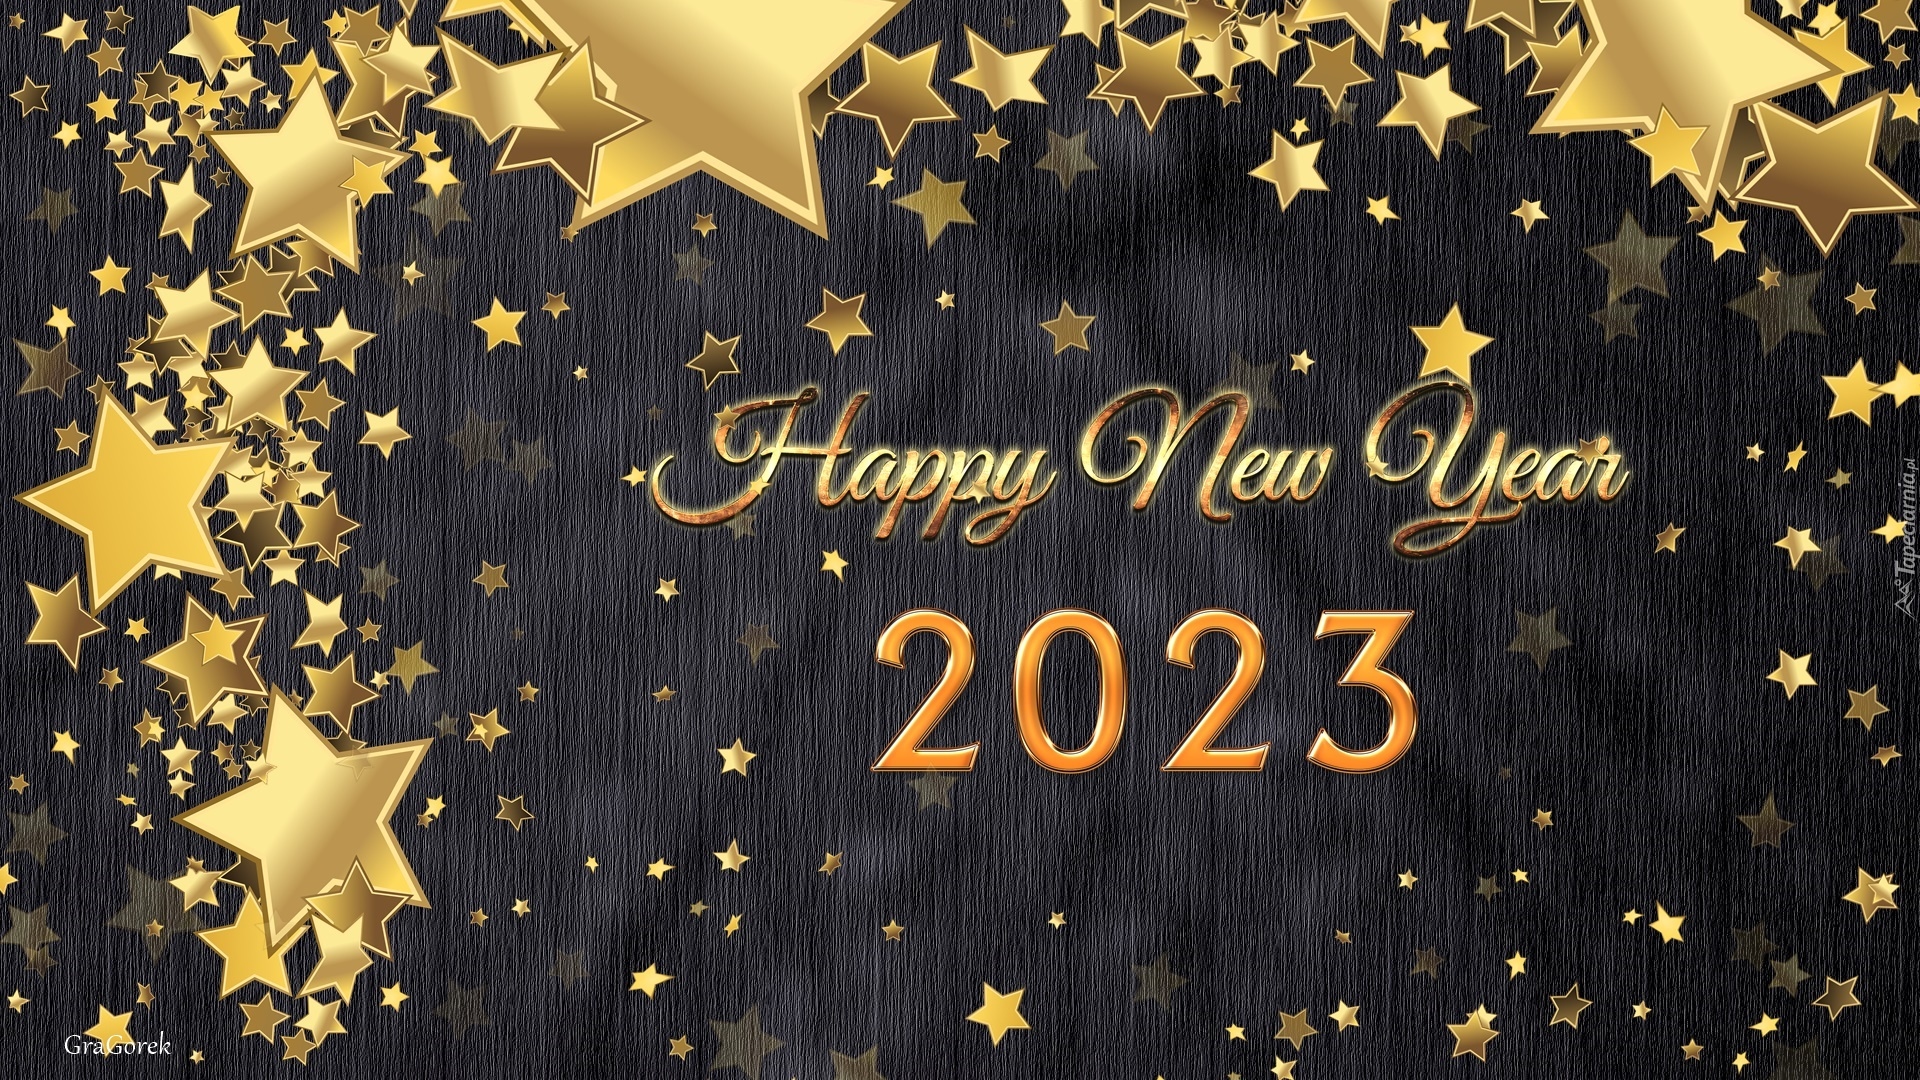 Nowy Rok, 2023, Data, Gwiazdy, Życzenia